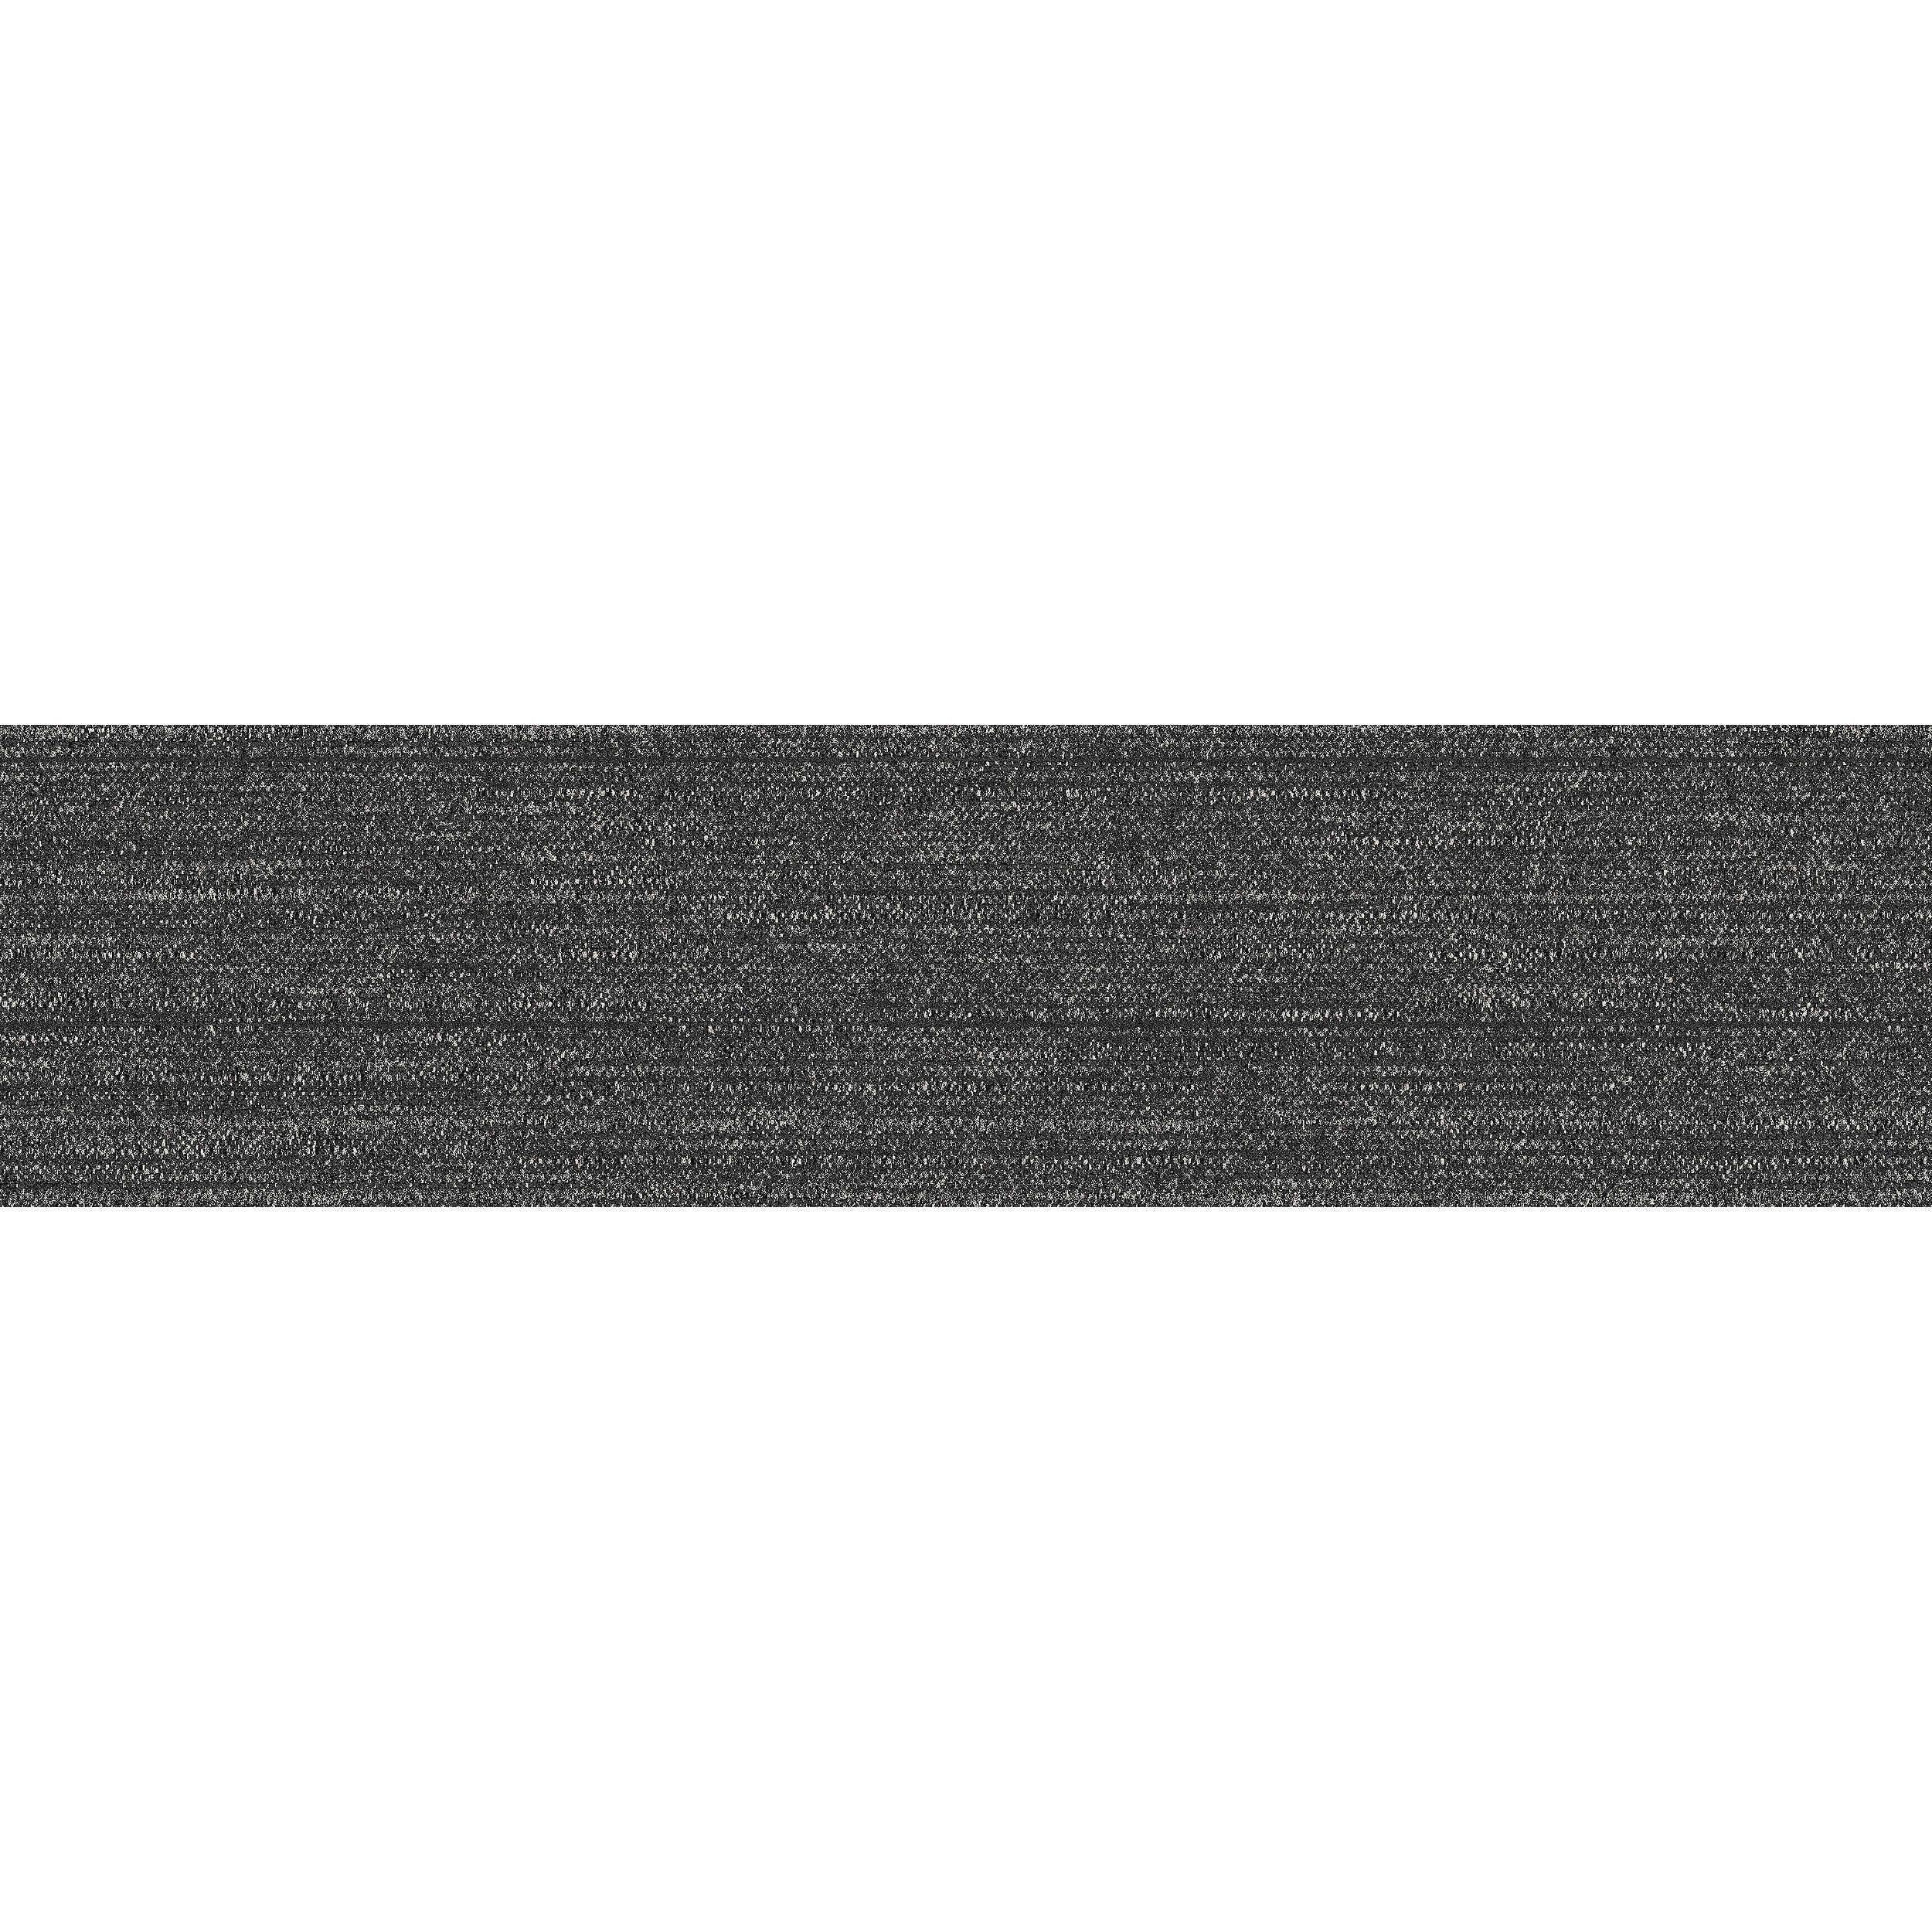 WW880 Carpet Tile In Black Loom imagen número 8